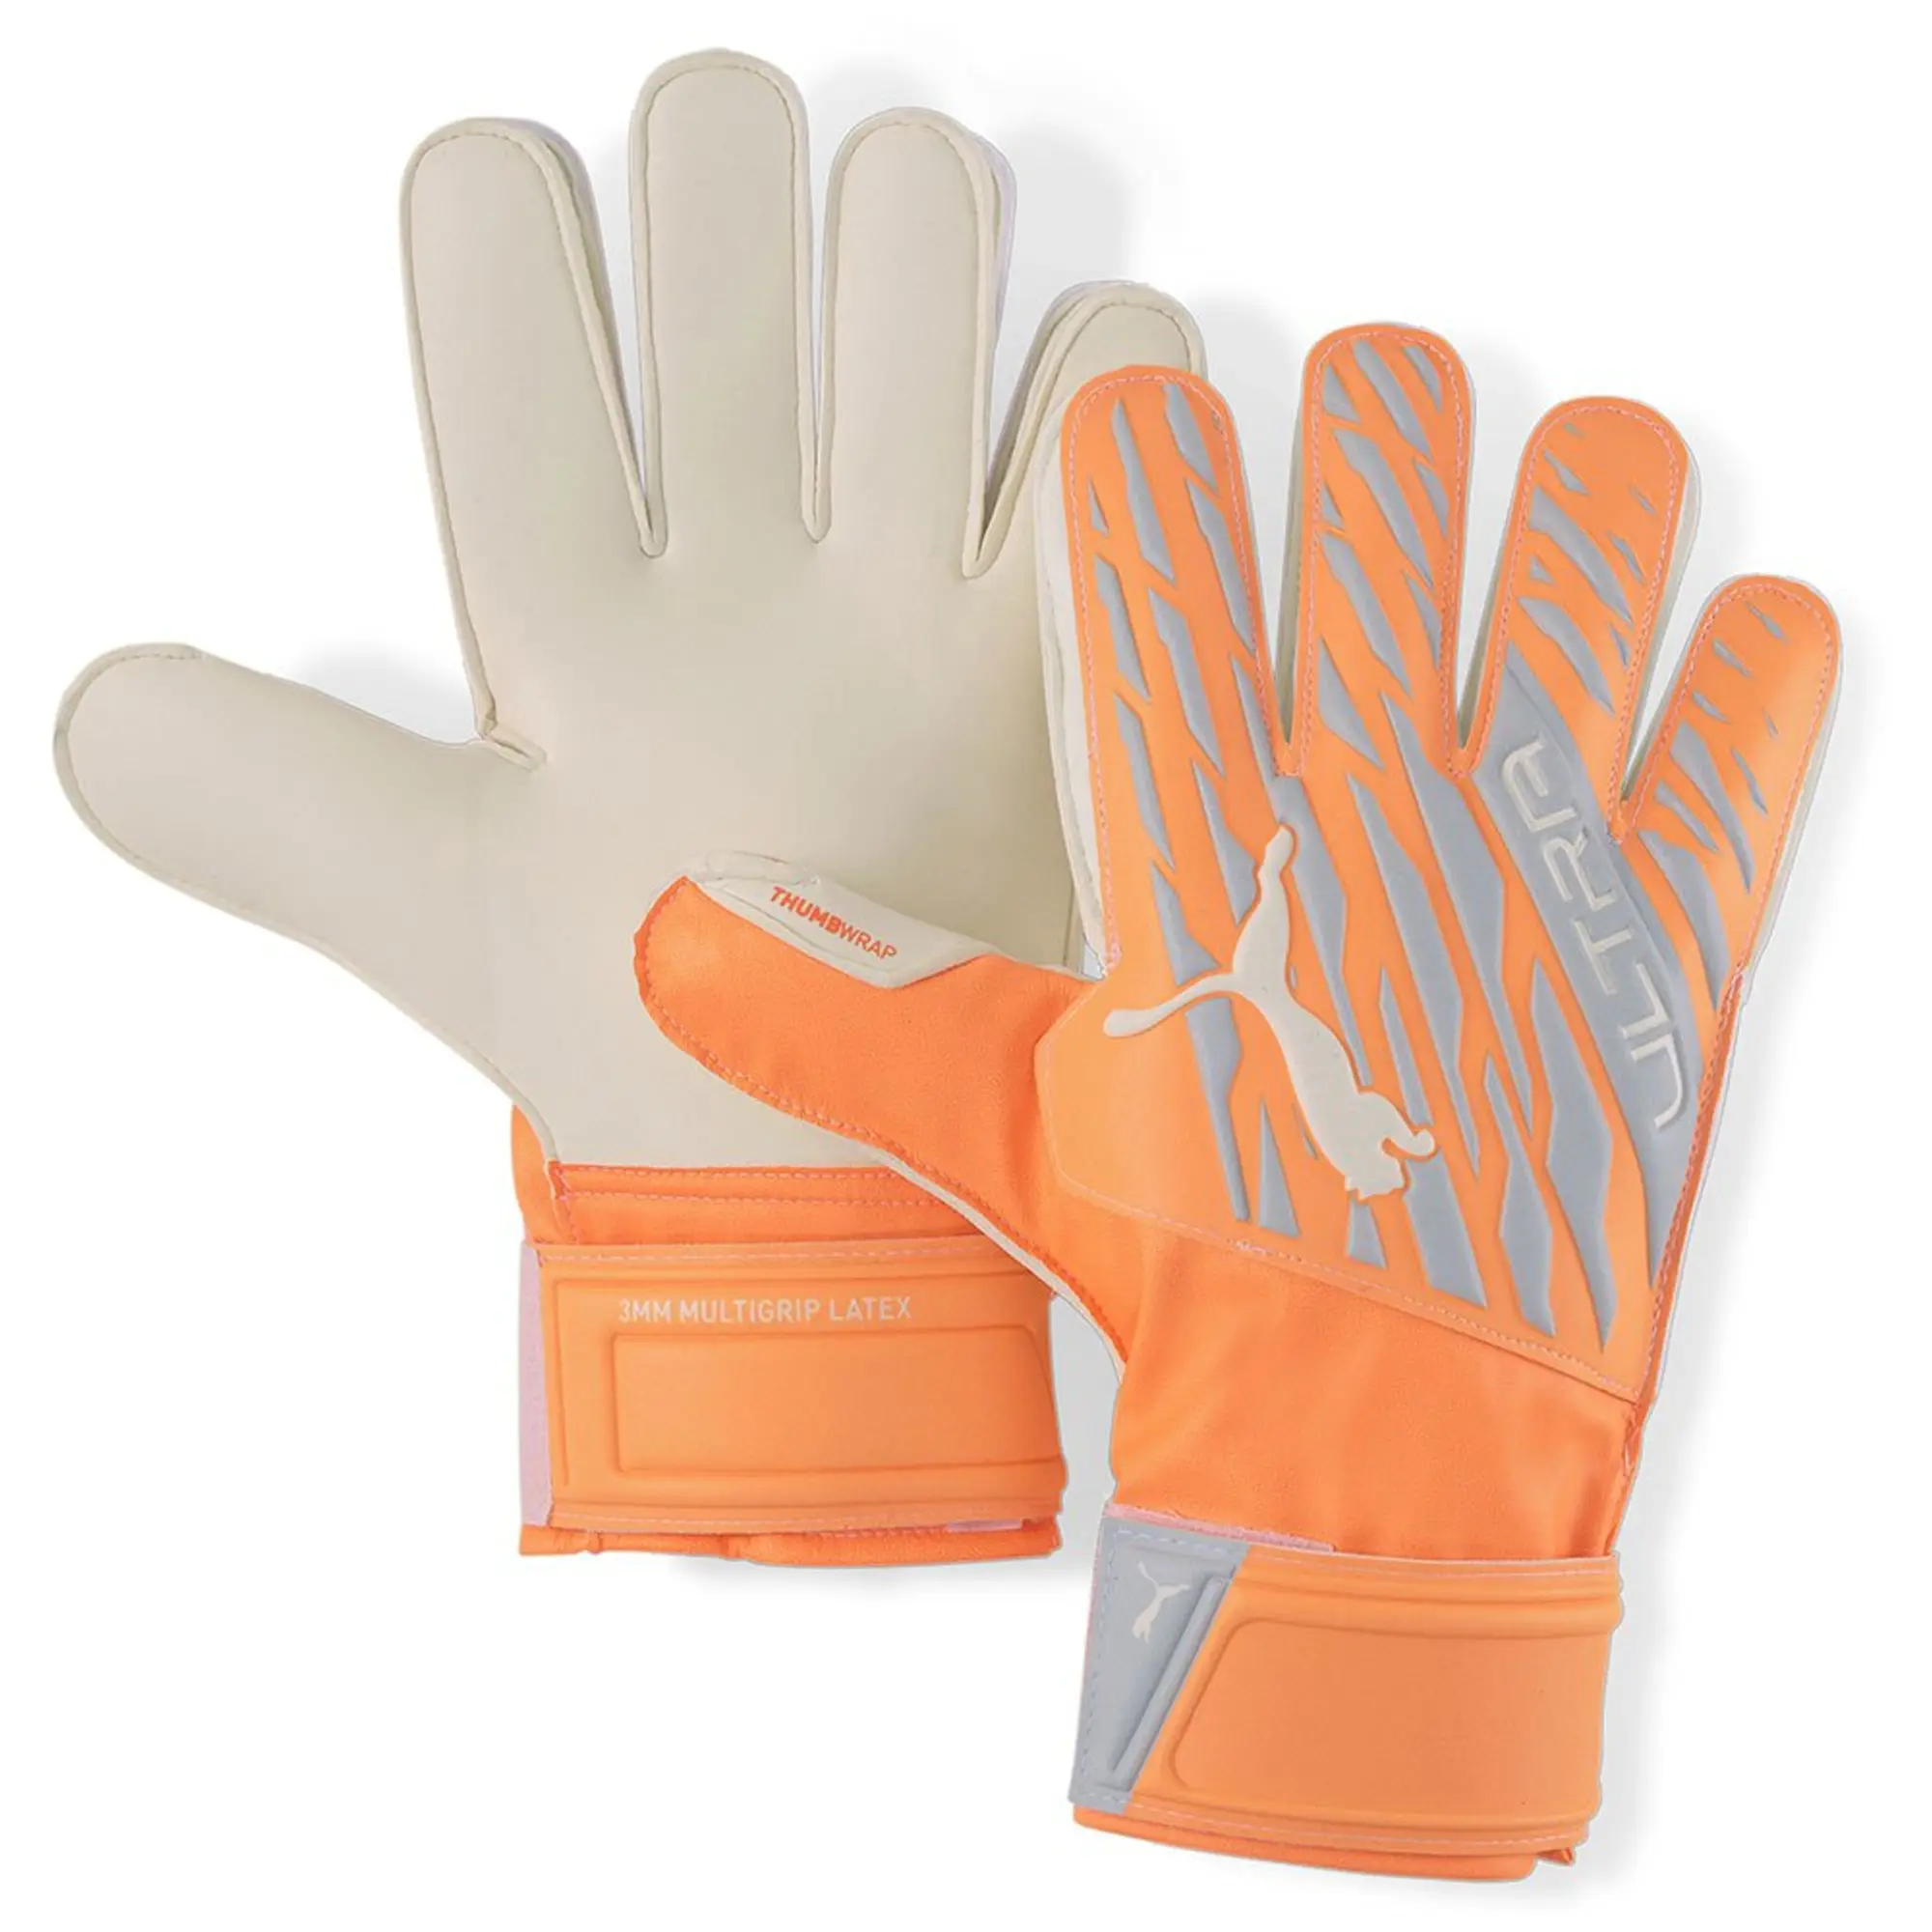 Puma Ultra Protect 3 Goalkeeper Gloves - Orange